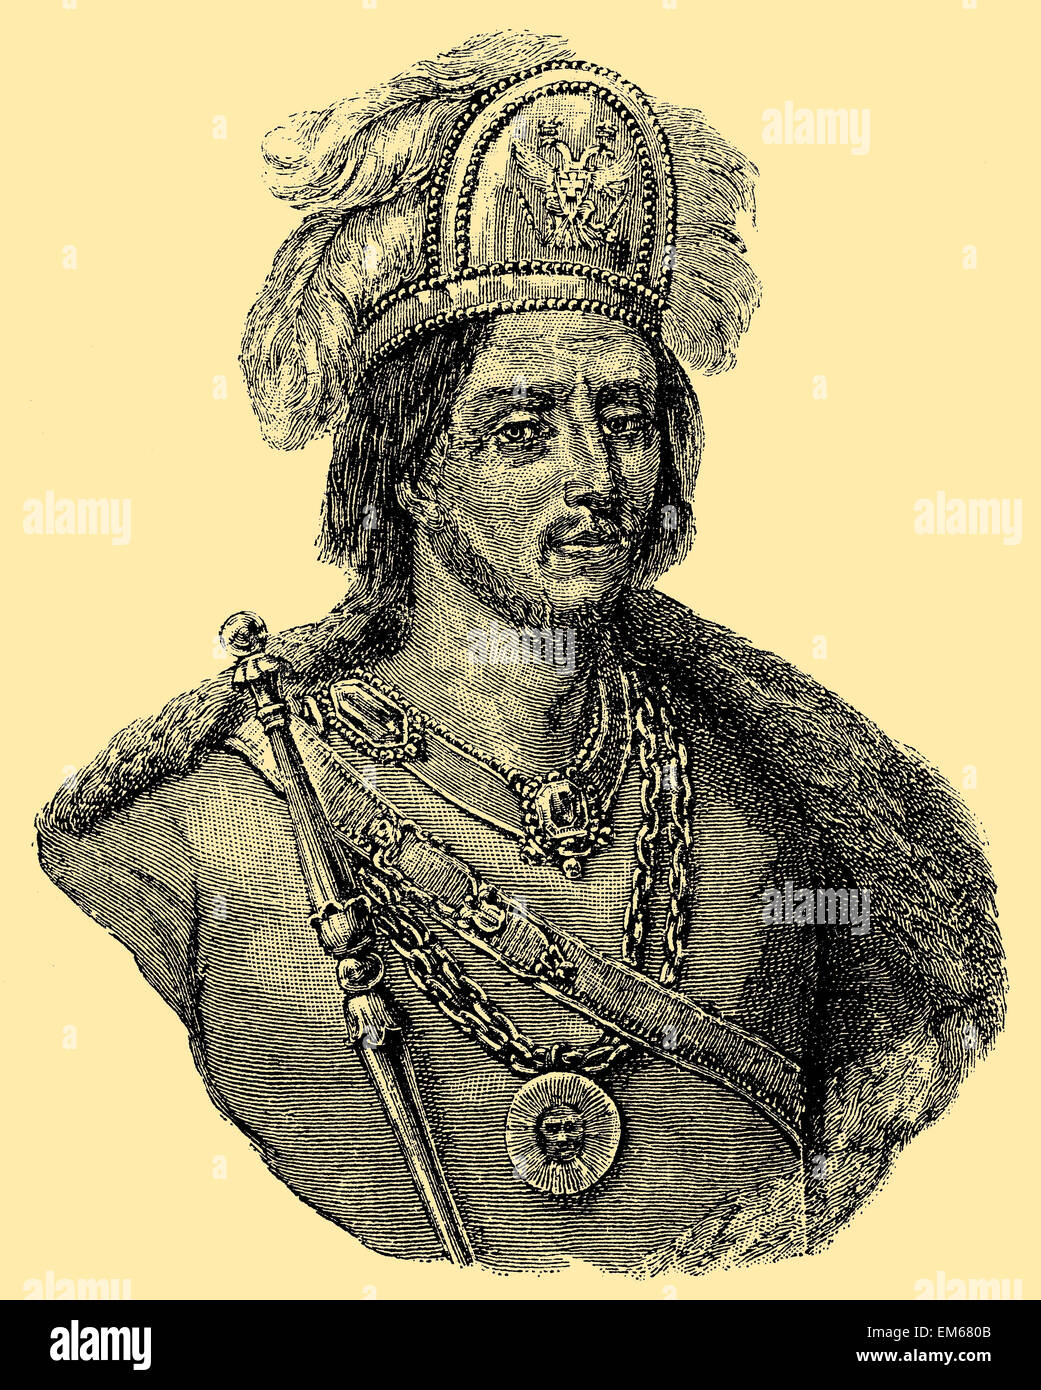 Moctezuma II (1466-1520), el noveno emperador azteca, regla al comienzo de la conquista española de México Foto de stock